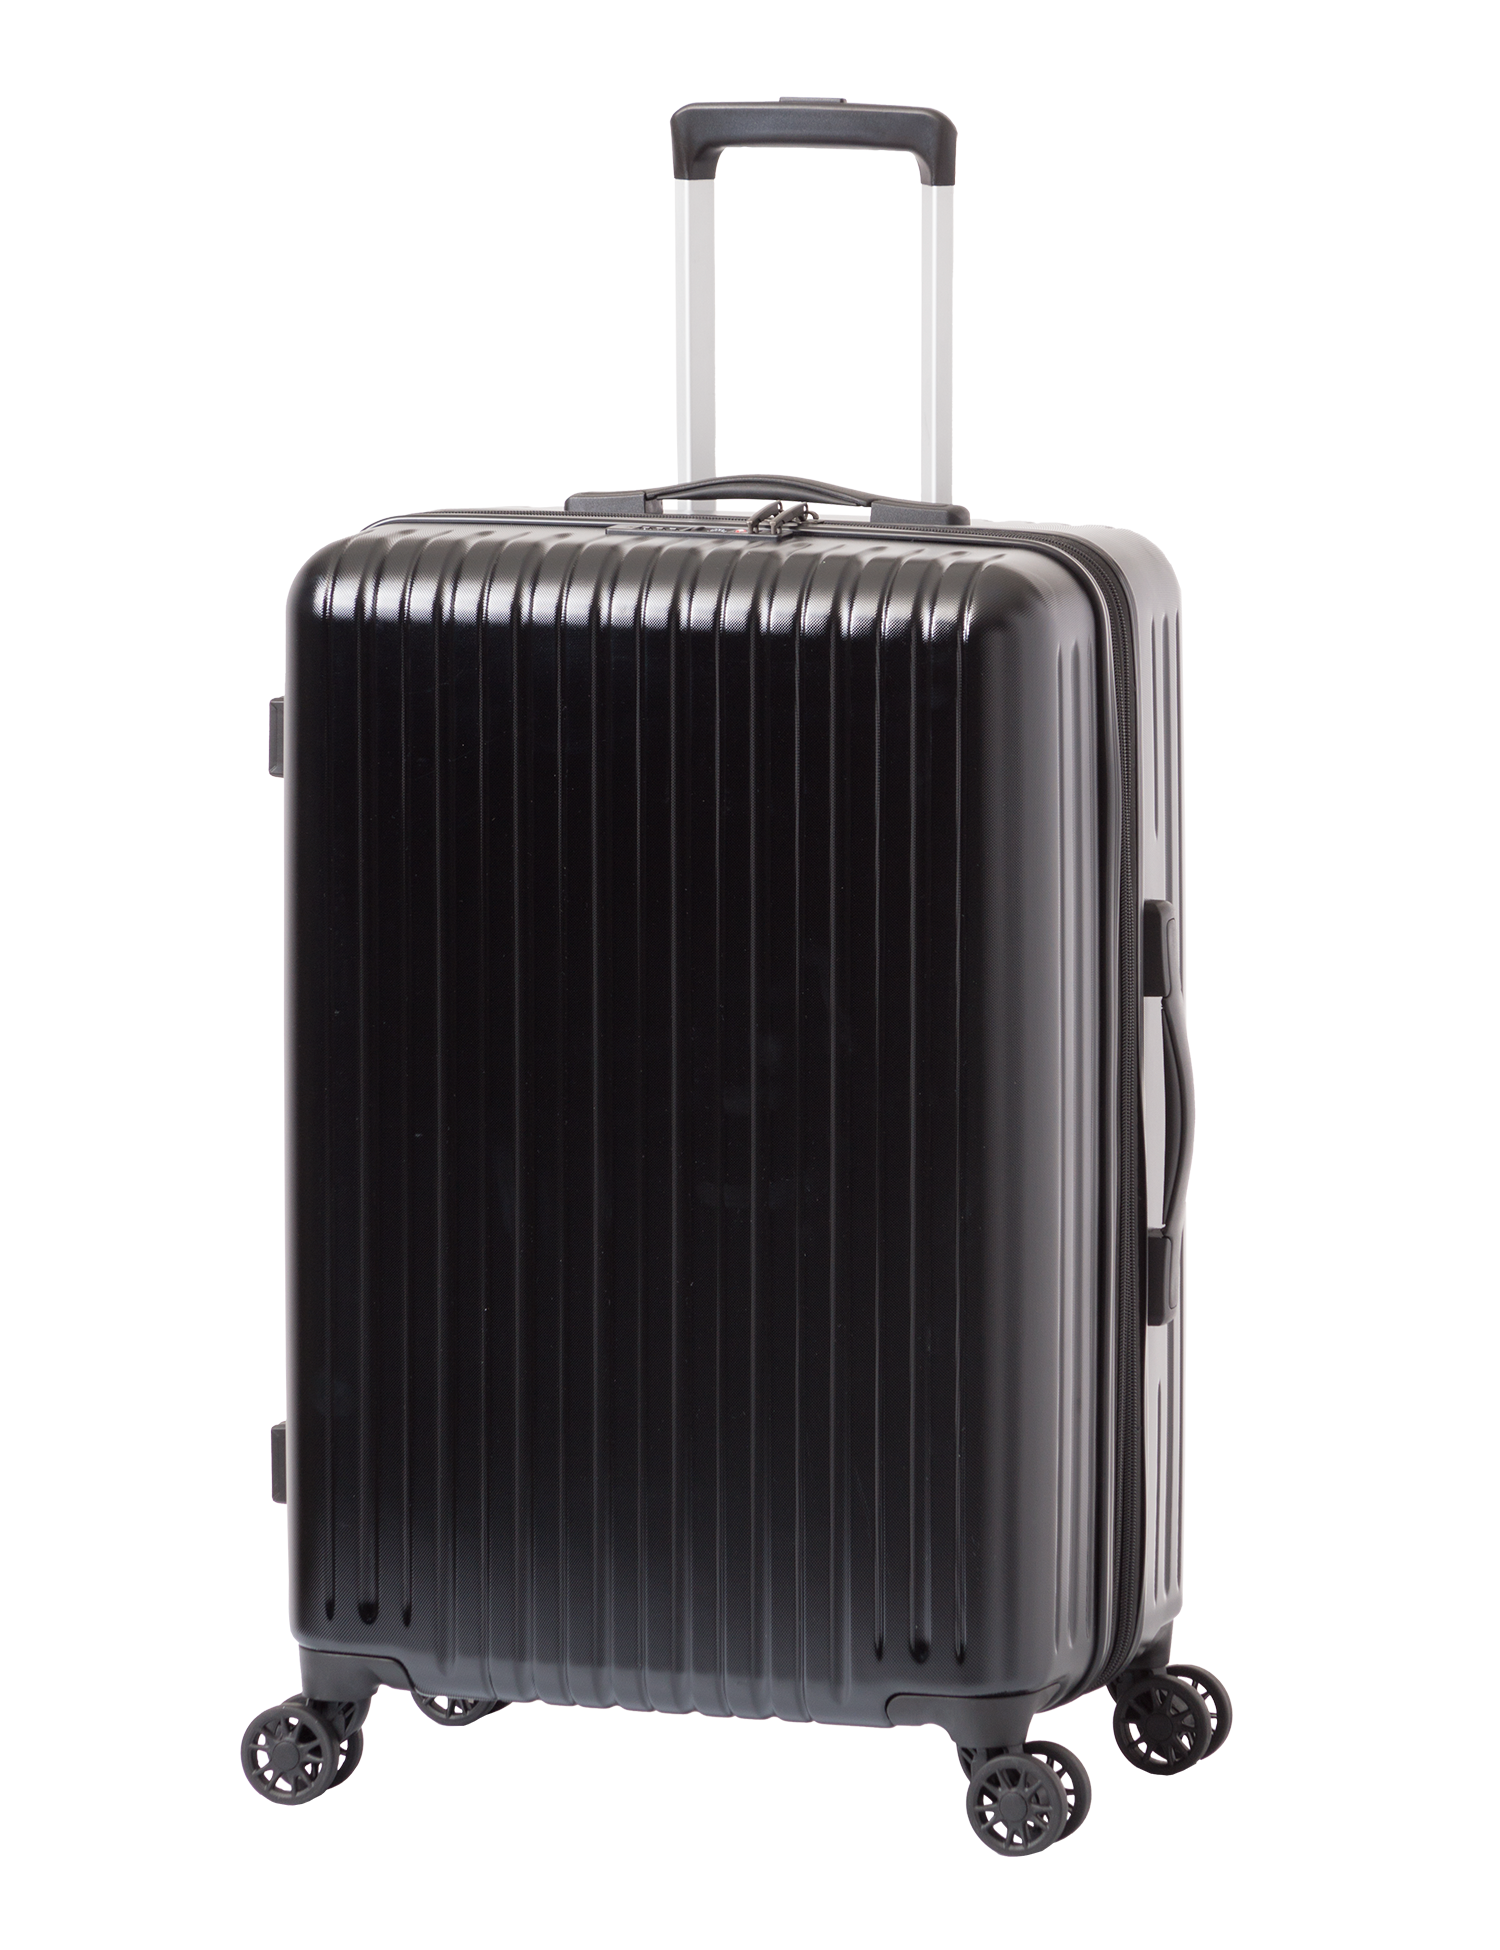 アジア・ラゲージのスーツケース | アジア・ラゲージ 公式サイト 